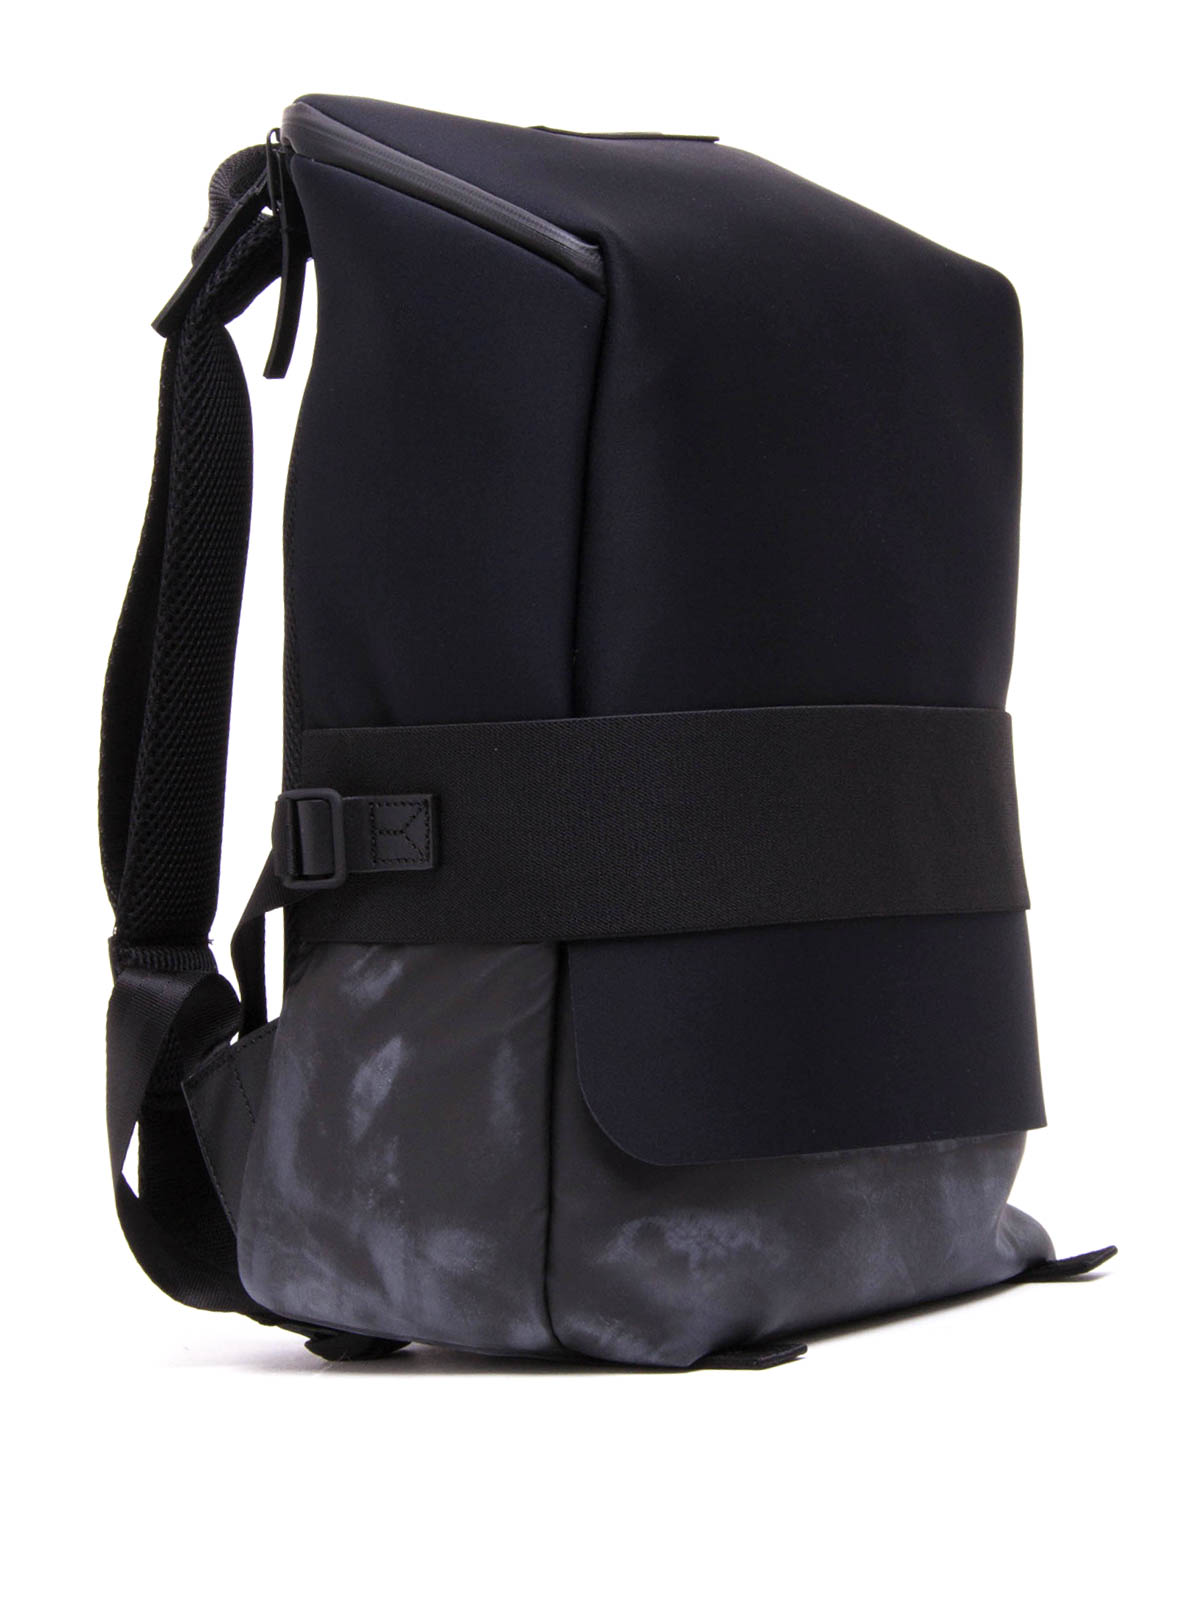 【1回の使用でほぼ未使用】Y-3 QUASA backpack バックパック